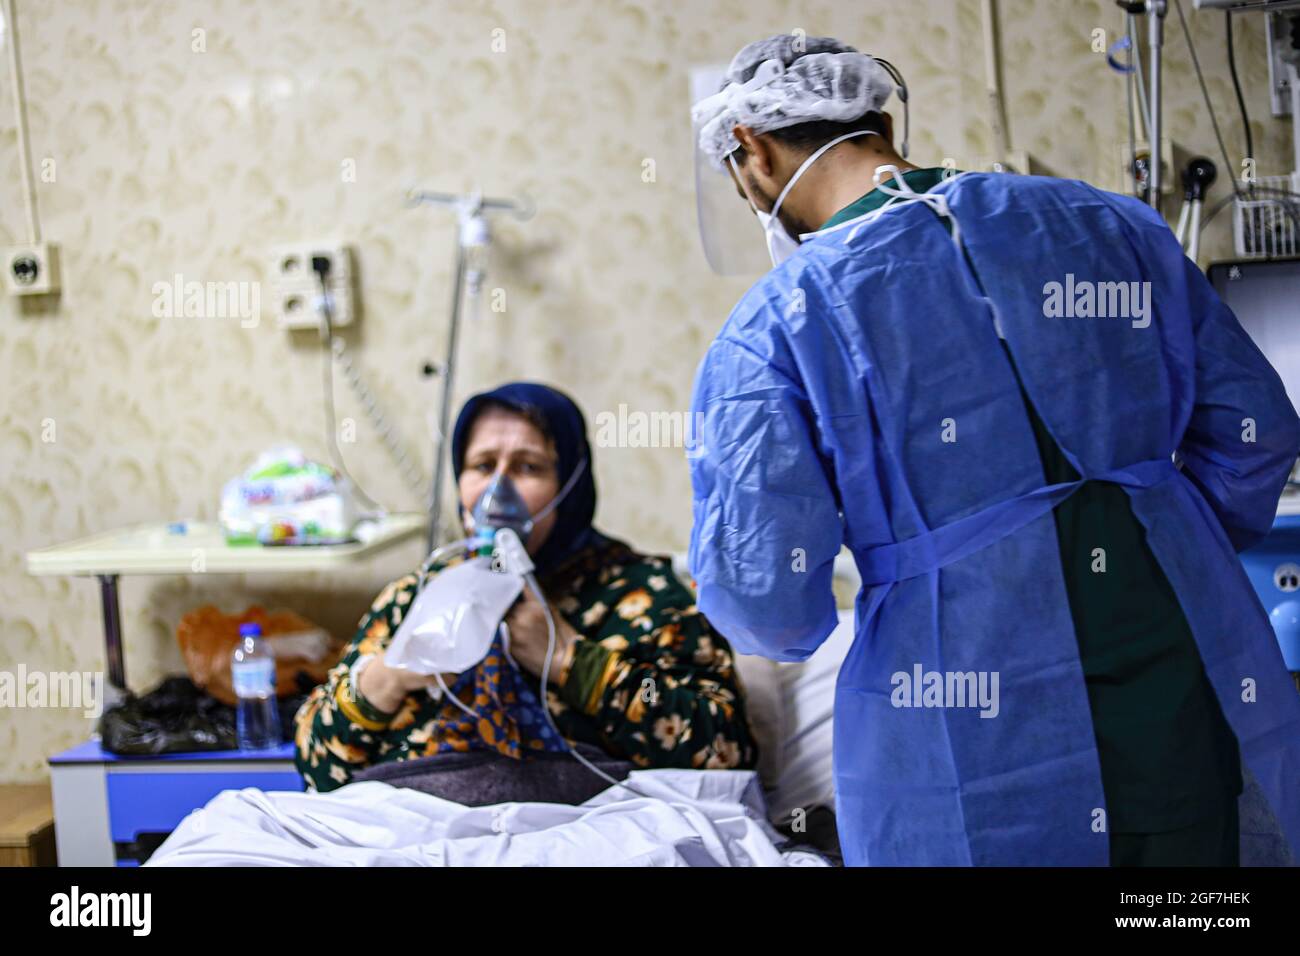 Idlib, Syrien. August 2021. Ein Arzt in Schutzkleidung kümmert sich um eine ältere Frau, die an einer Delta-Mutation in einem Isolationskrankenhaus in Idlib leidet.die Delta-Mutante kam in Idlib an, wo im Idlib-Labor 92 Proben genotypisiert wurden. Die Alpha-Mutante wurde in 6 Proben und die Delta-Mutante in 47 Proben gefunden, und es gibt einen signifikanten Anstieg der Anzahl der bestätigten Fälle von Covid-19 in den letzten Tagen. (Bild: © Omar Albam/SOPA Images via ZUMA Press Wire) Stockfoto